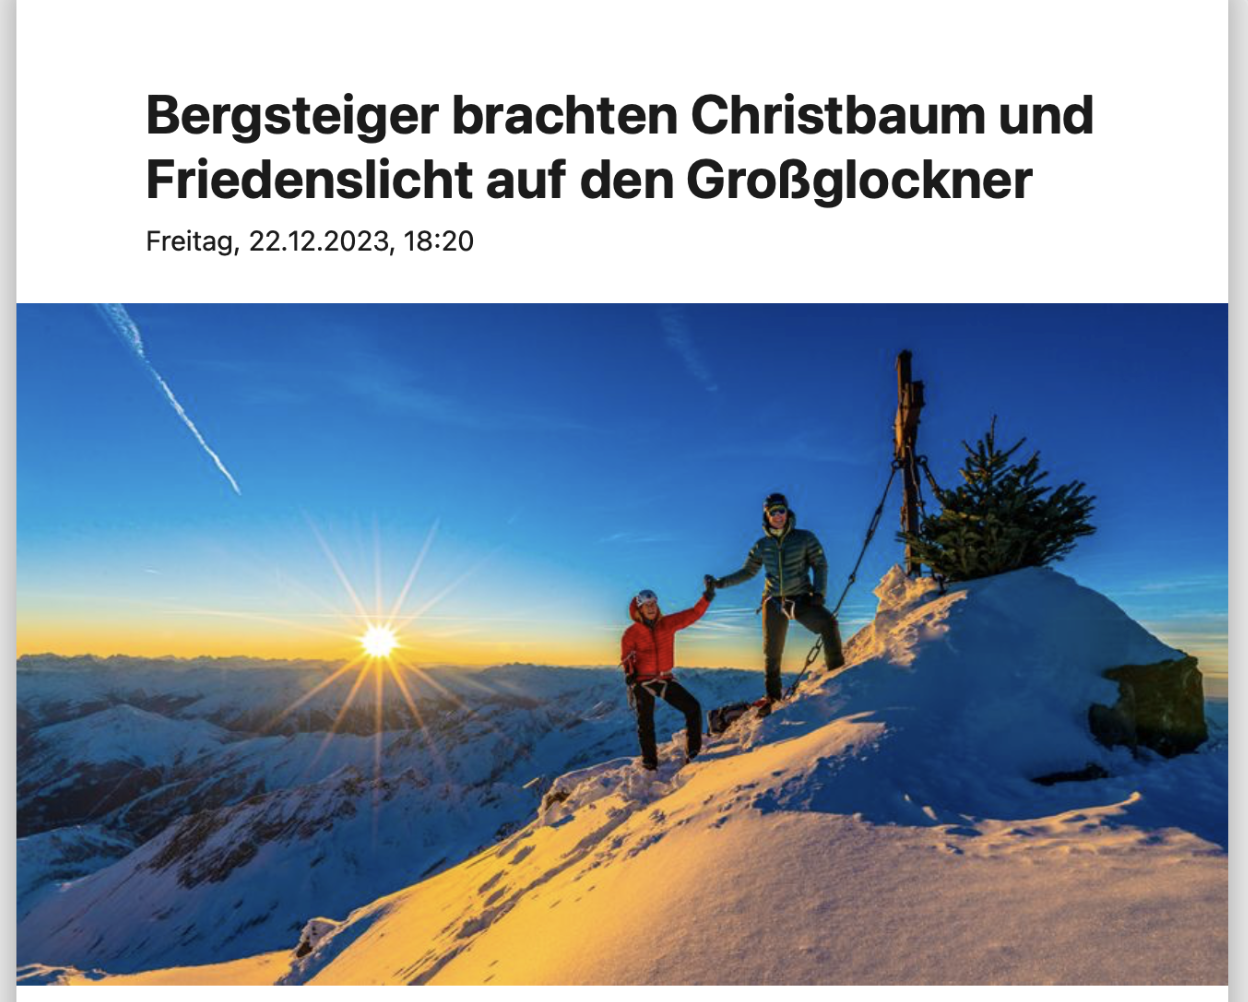 ORF – Bergsteiger brachten Christbaum und Friedenslicht auf den Glockner